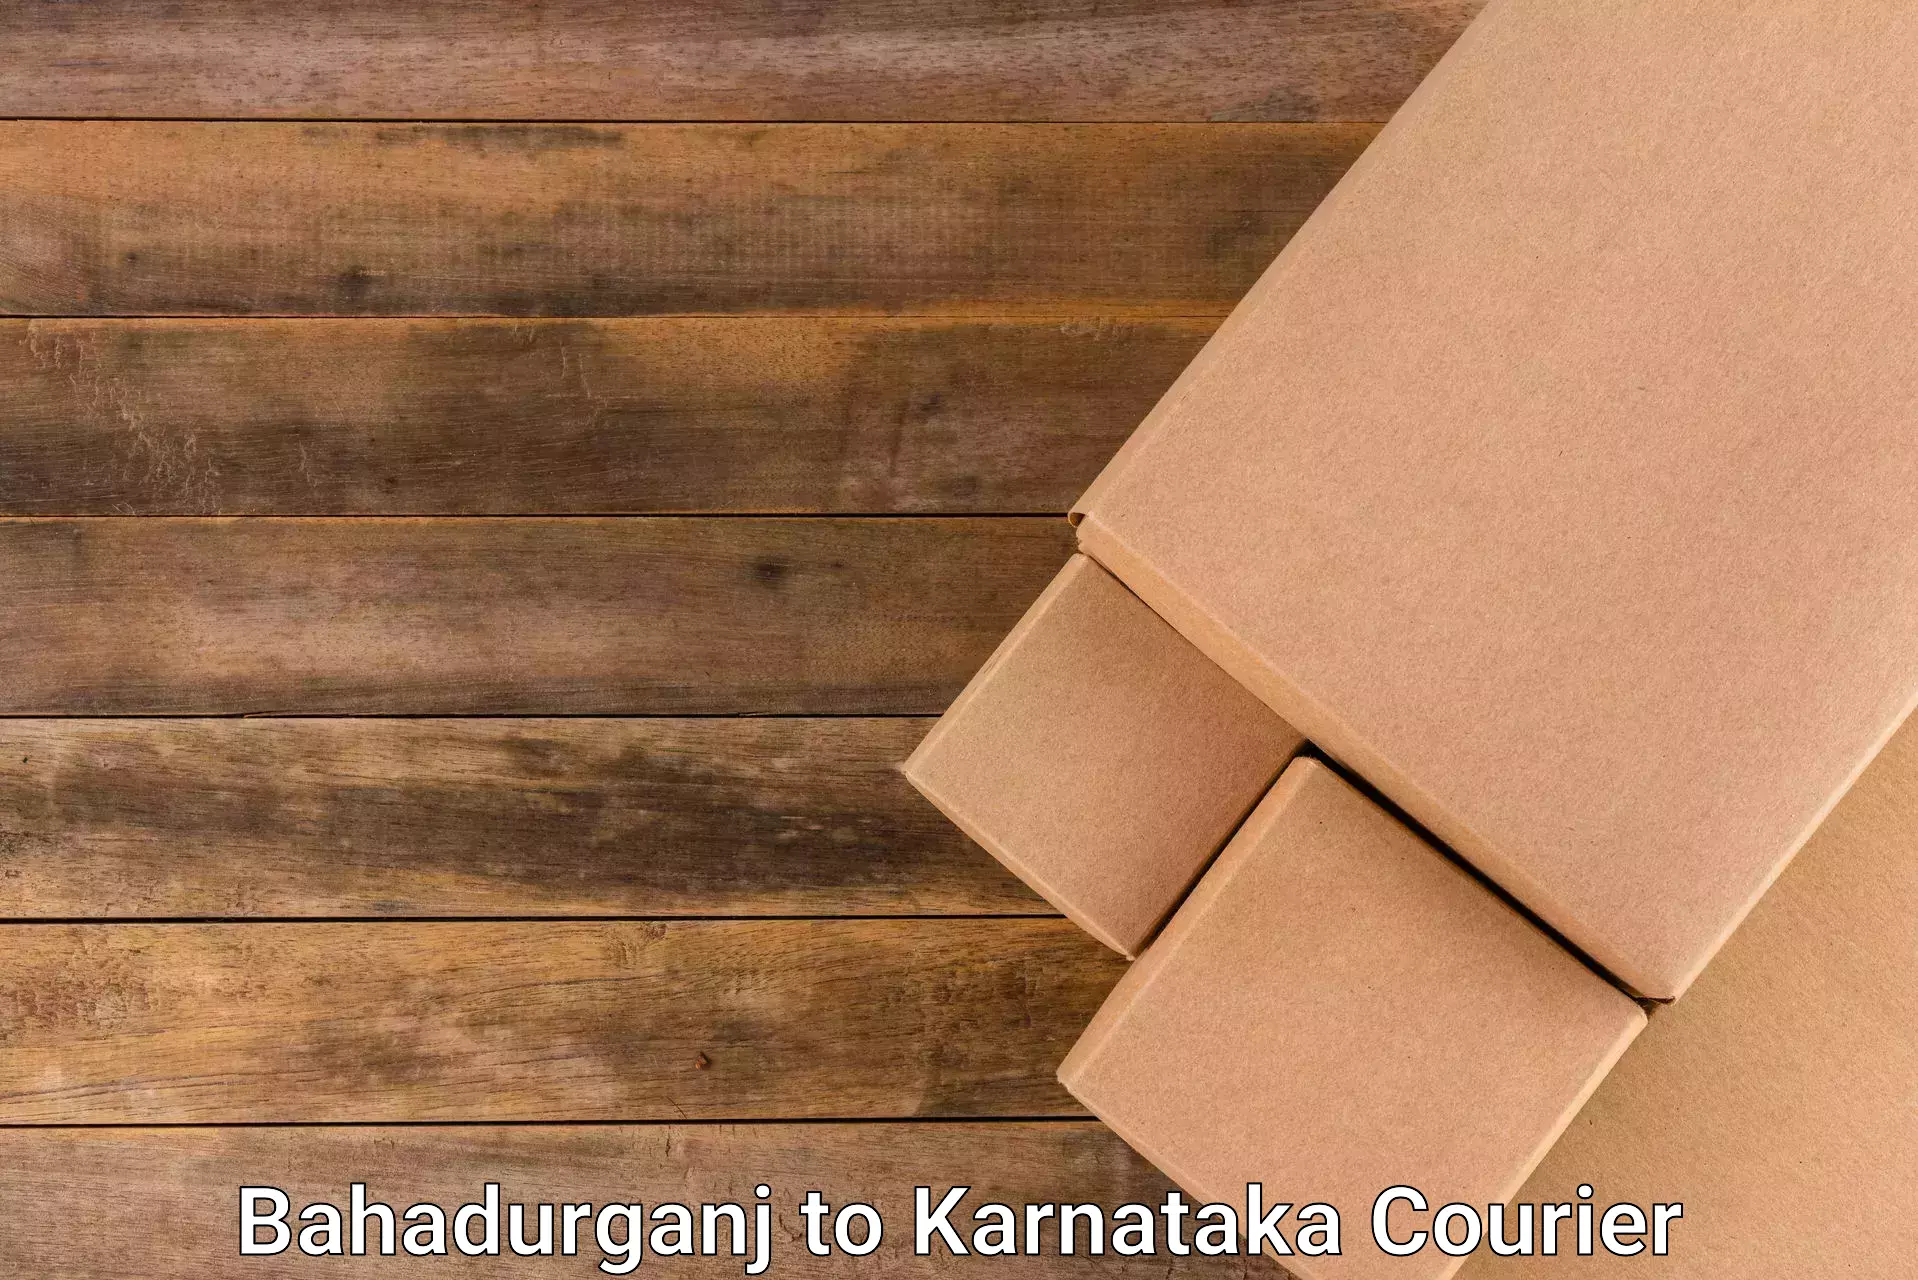 Supply chain delivery in Bahadurganj to Karnataka